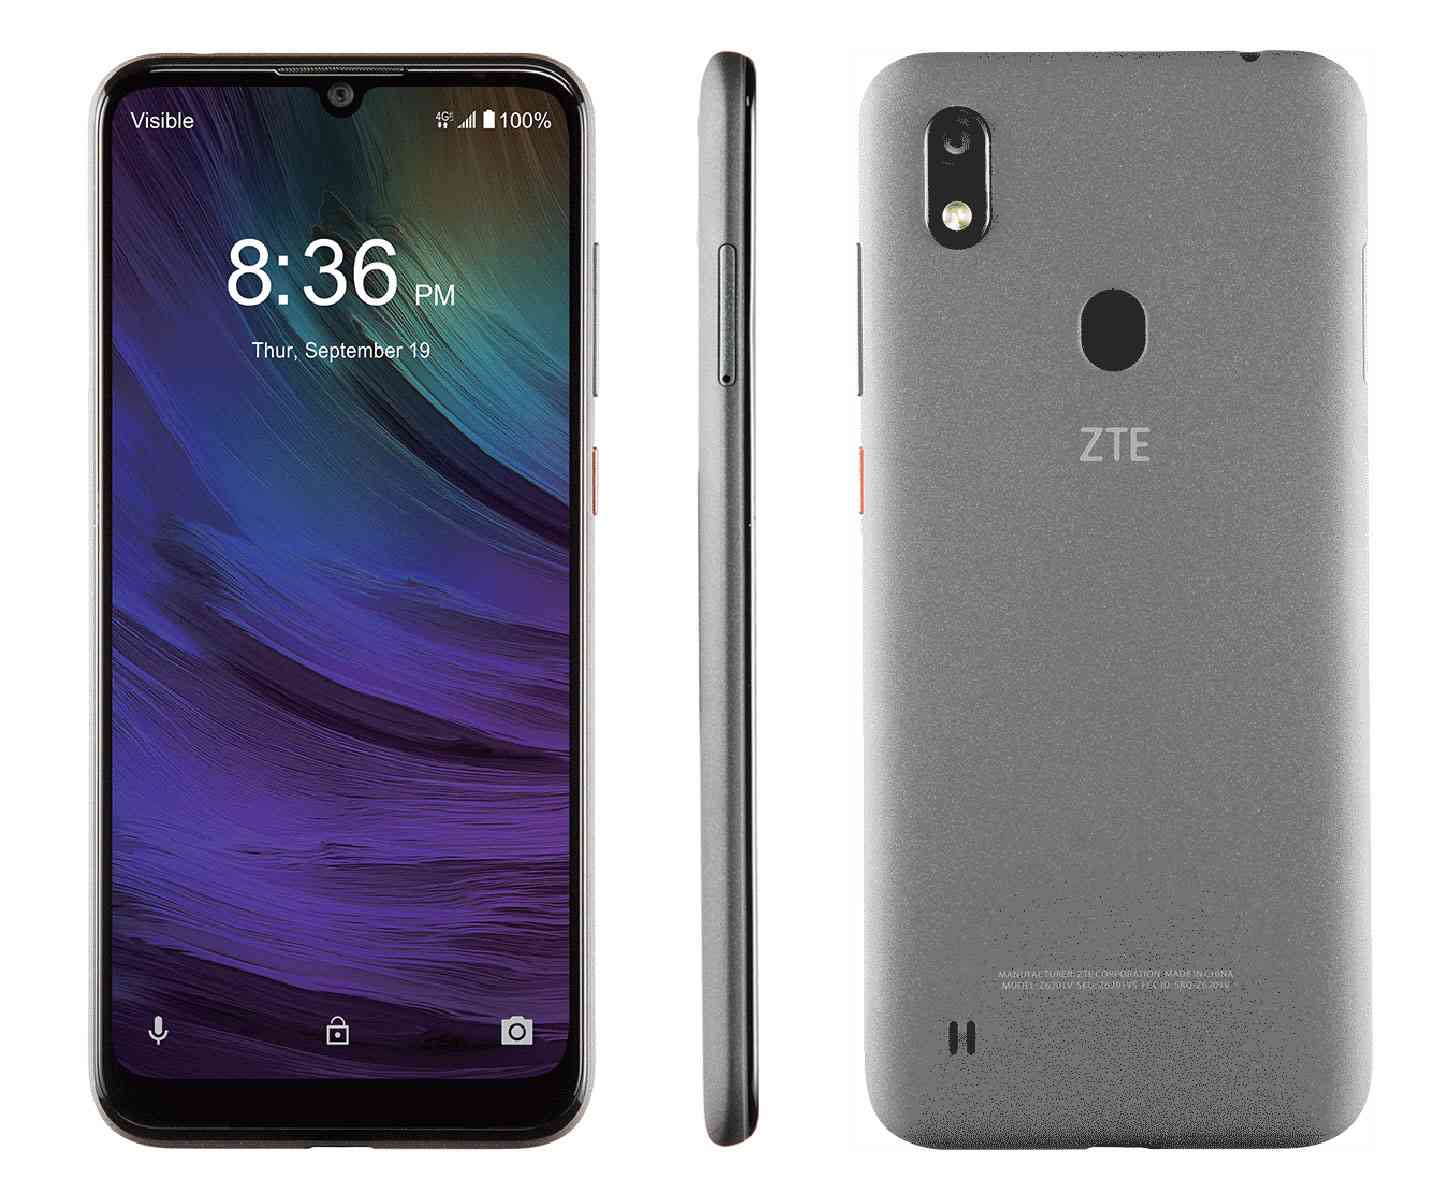 Présentation du smartphone ZTE Blade A7 Prime avec les principales caractéristiques